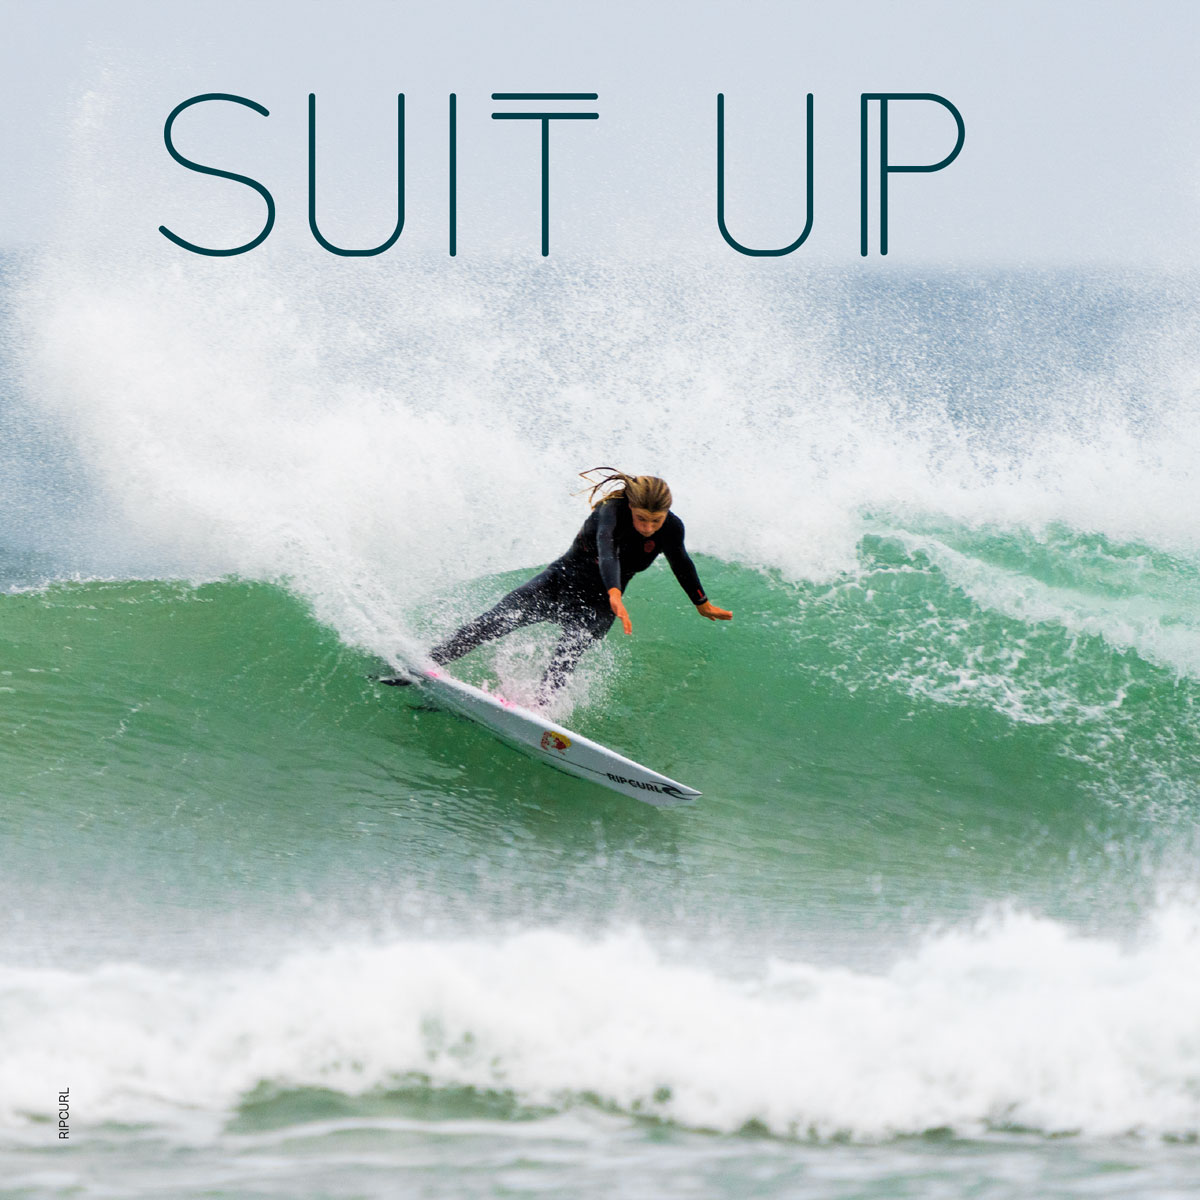 SurfGirl Winter Wetsuit Guide 2023/24 - SurfGirl Magazine